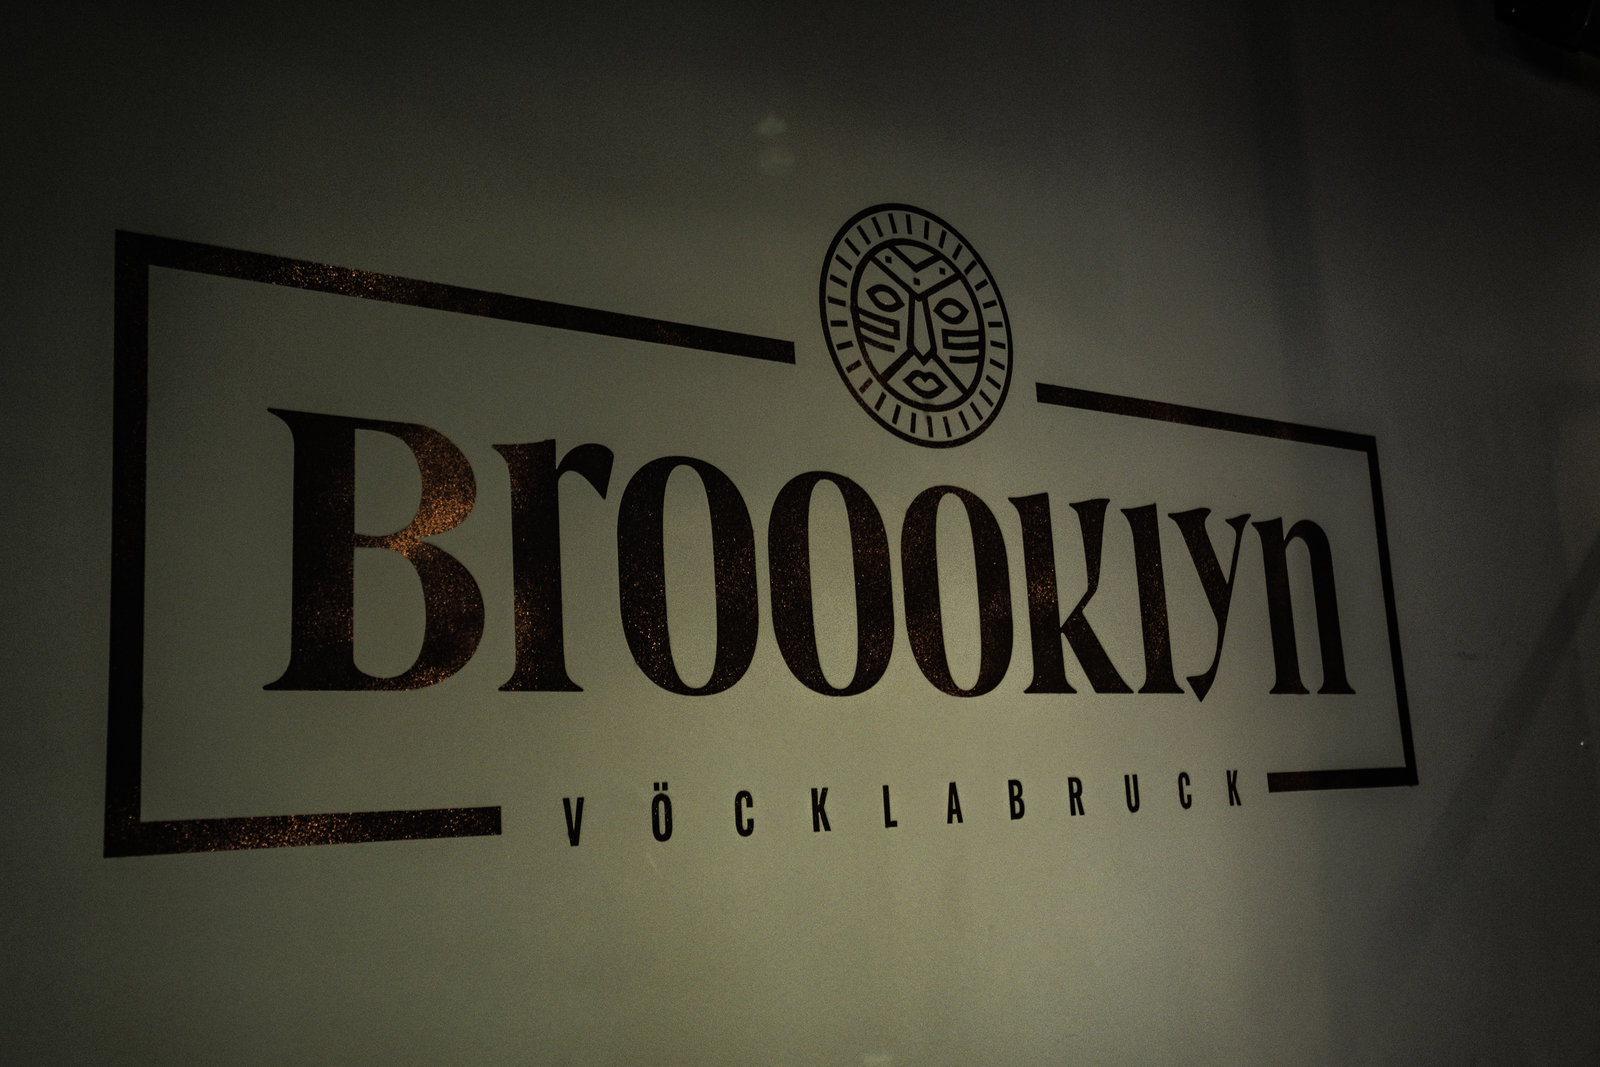 Brooklyn / Vöcklabruck / BAR RESTAURANT / Eröffnung-3